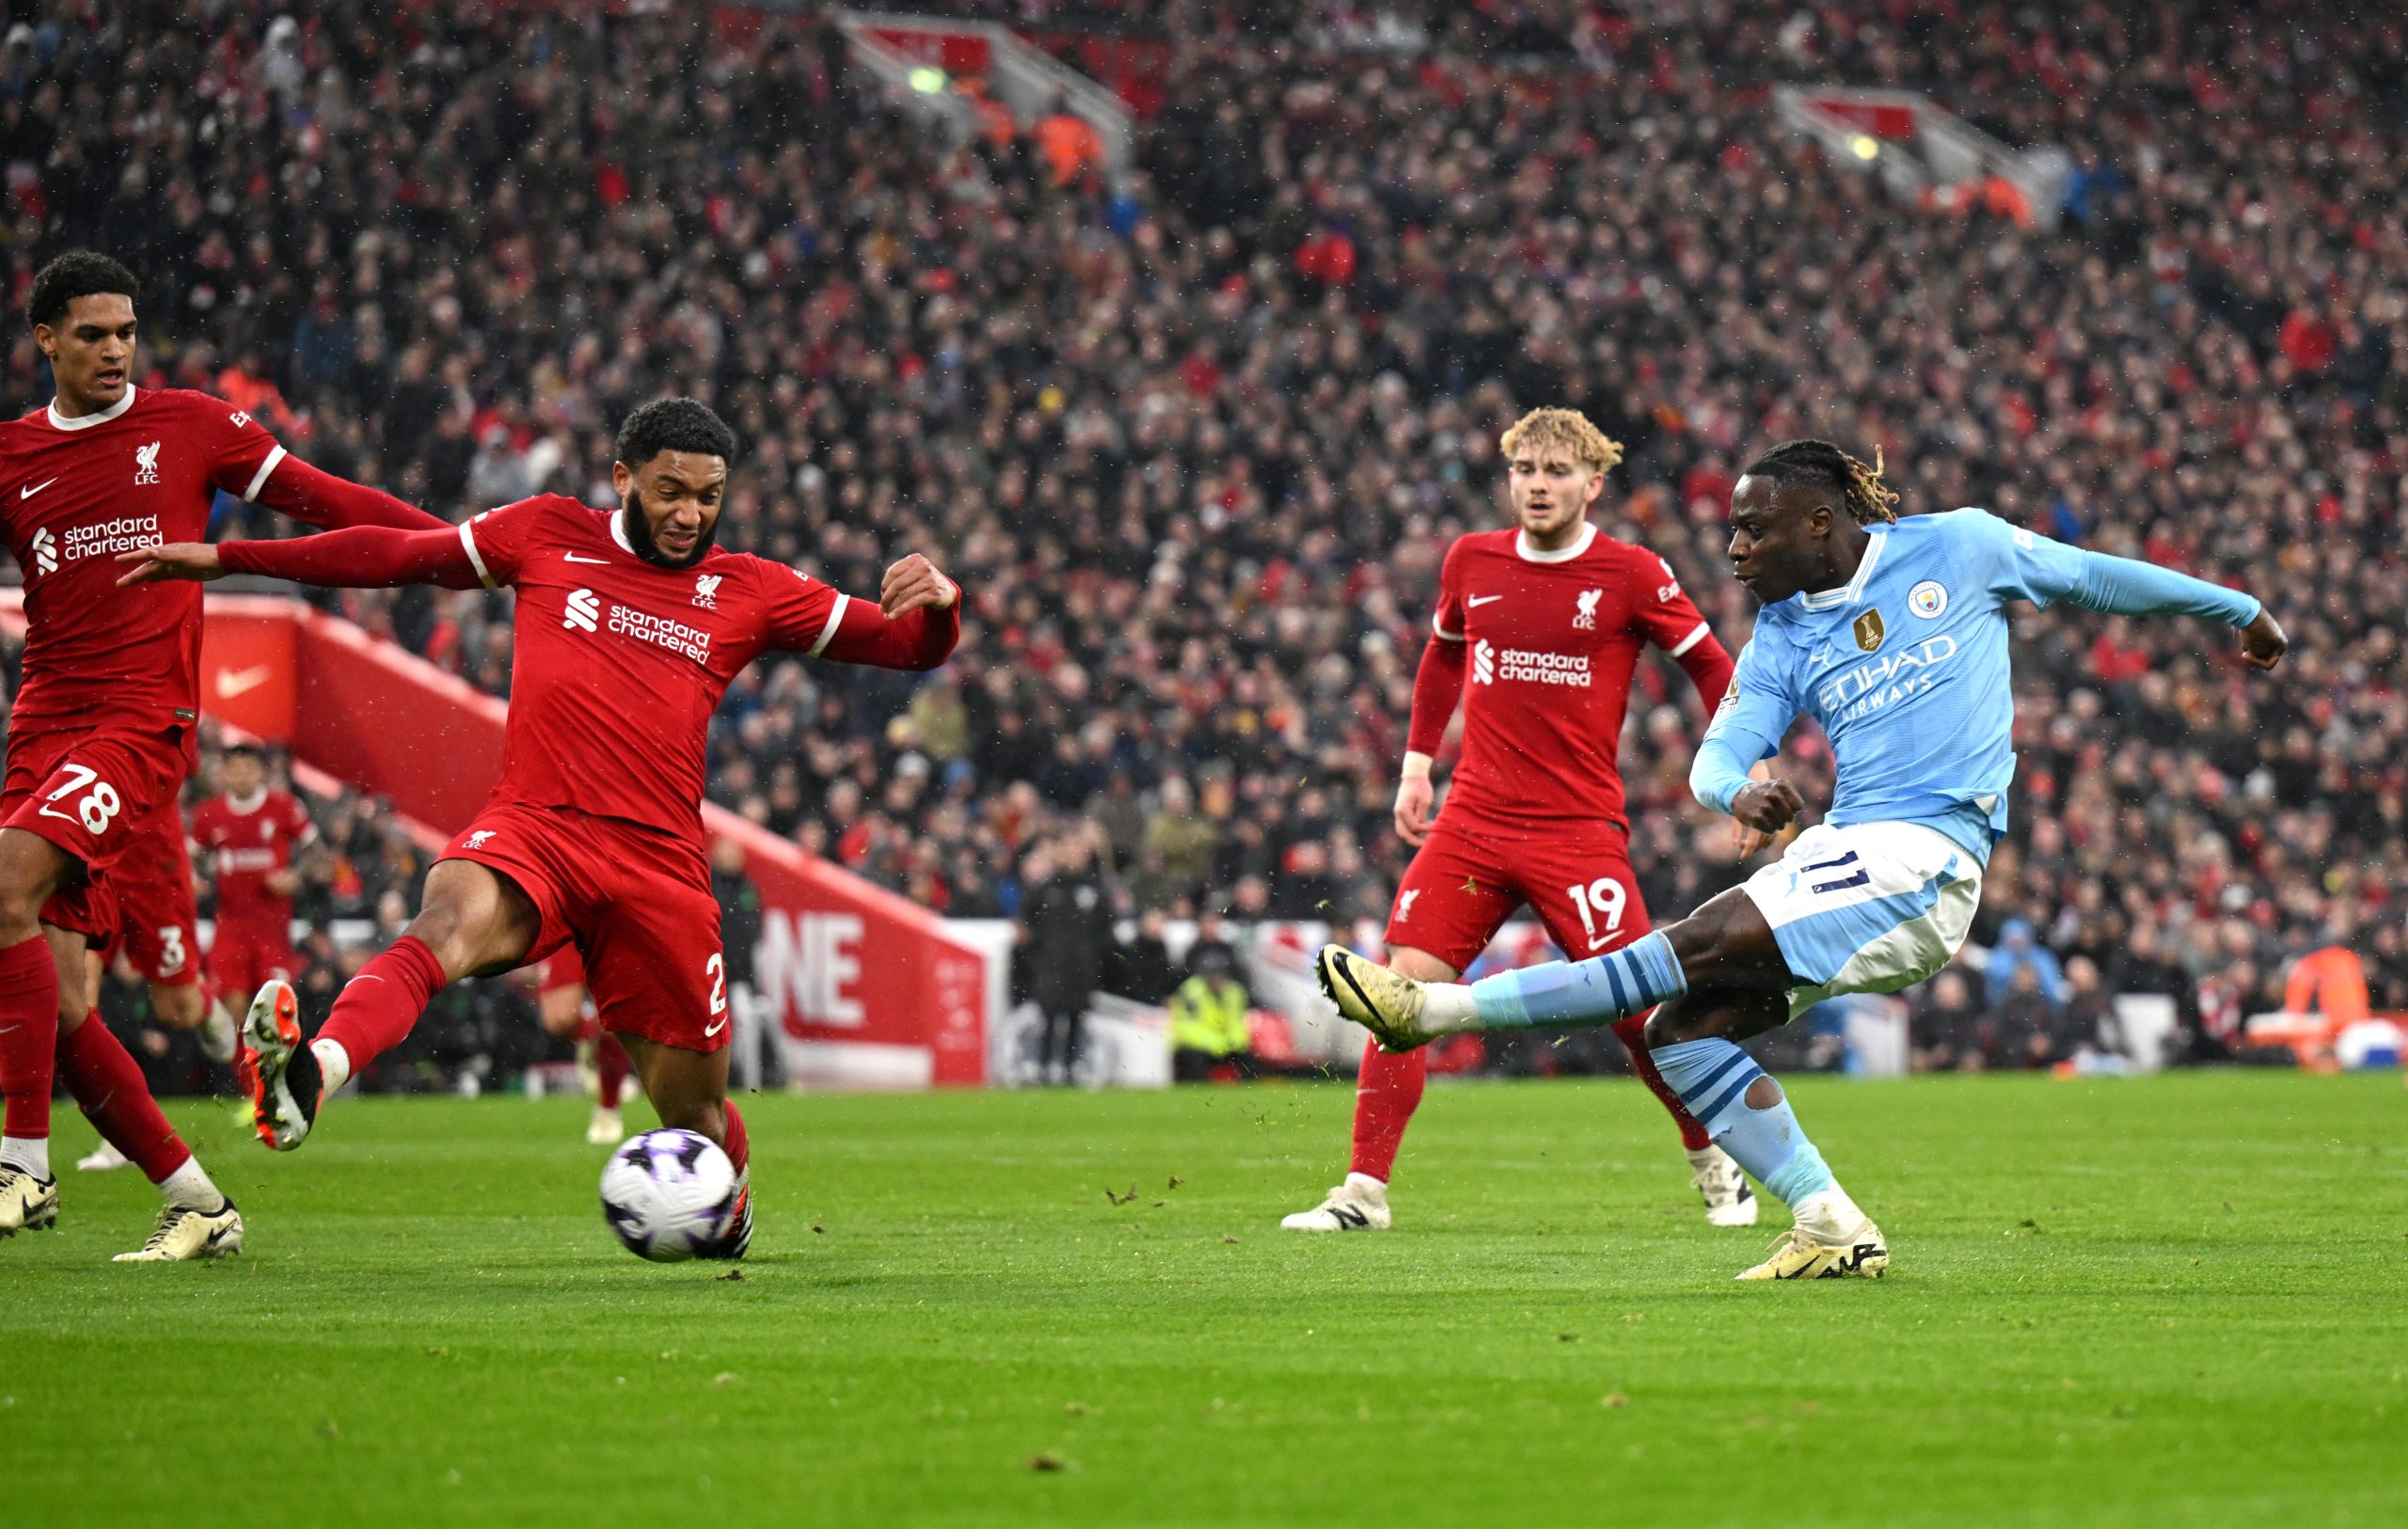 City e Liverpool ficam no empate em um duelo com muita emoção em Anfield - (Foto: Michael Regan/Getty Images)